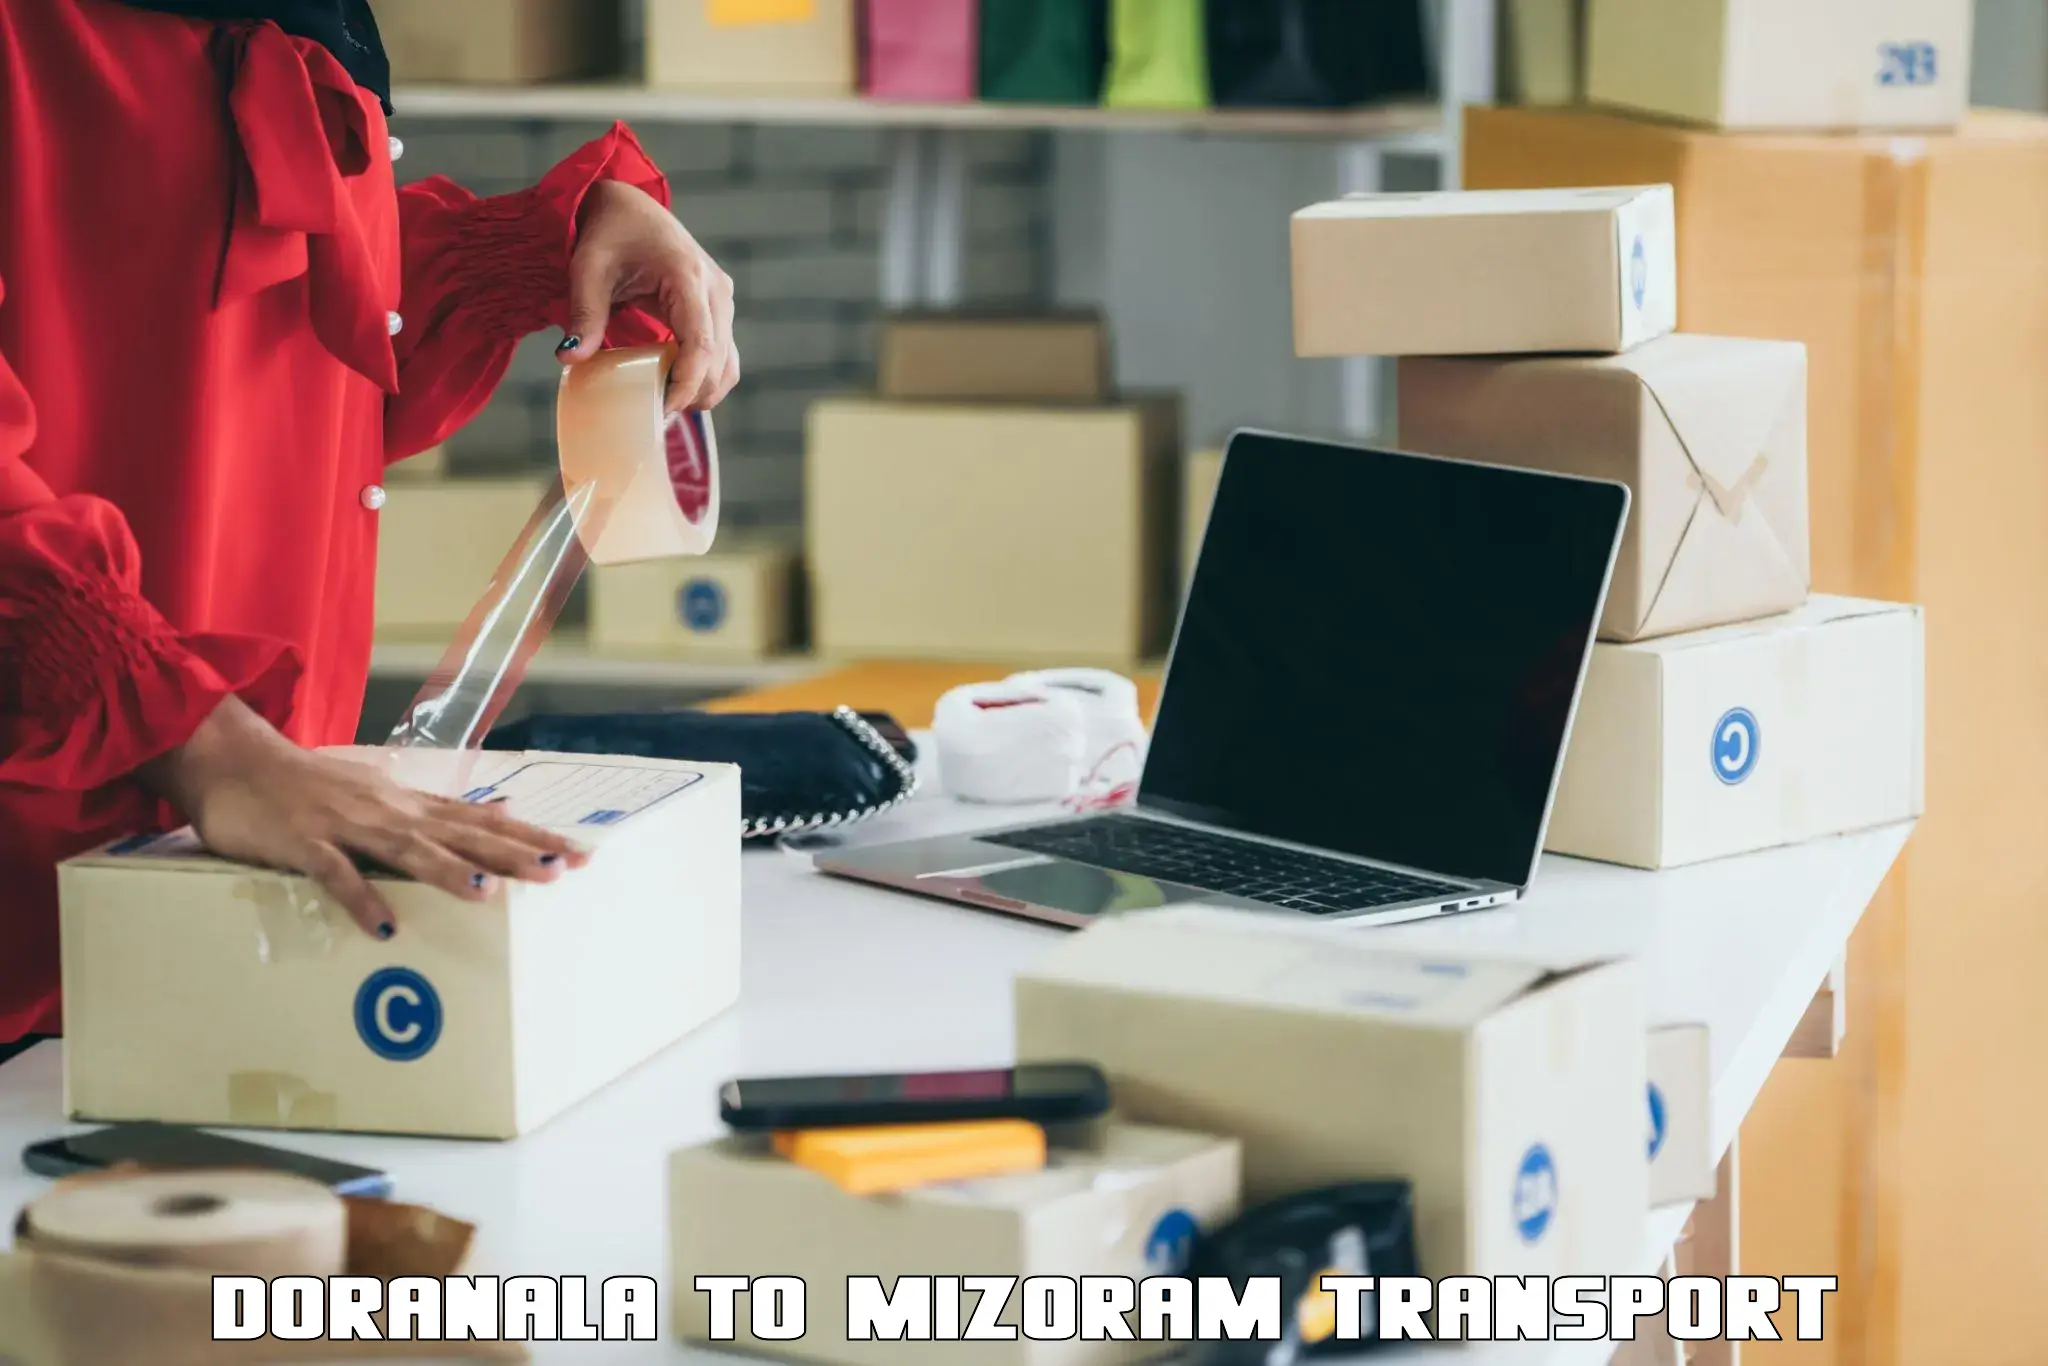 Furniture transport service Doranala to Mizoram